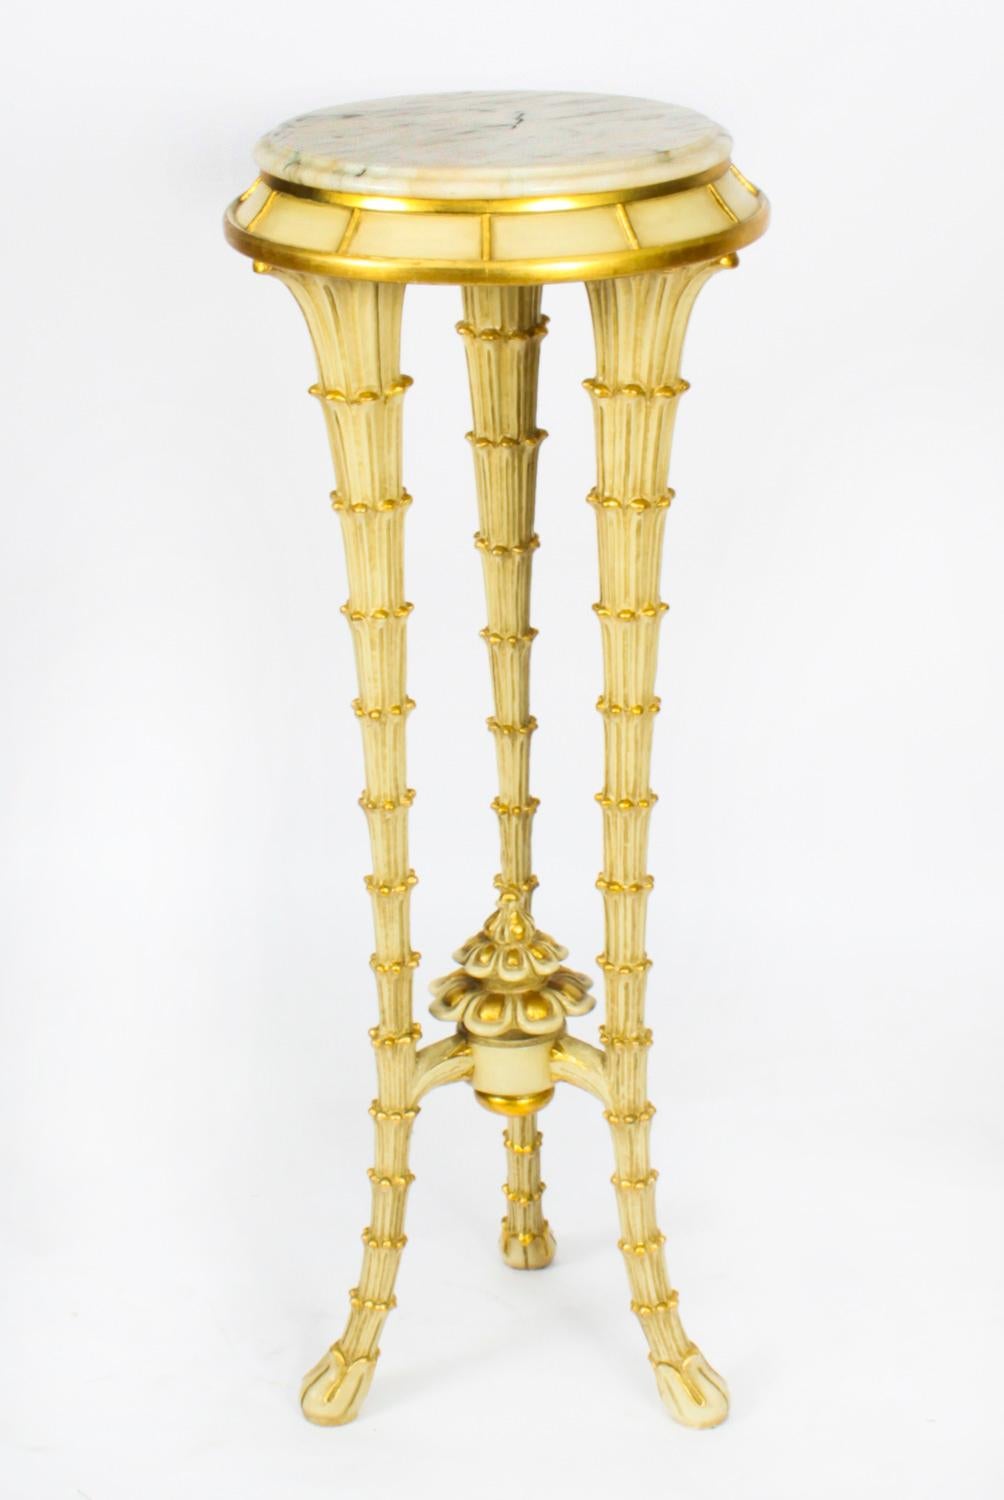 Dies ist eine wunderschöne Vintage Hollywood Regency Creme und vergoldet weißem Marmor gekrönt Sockel, ca. 1950 in Datum.

Die kreisförmige Marmorplatte steht auf dreibeinigen Beinen, die in Form von spitz zulaufenden Palmenstämmen geschnitzt